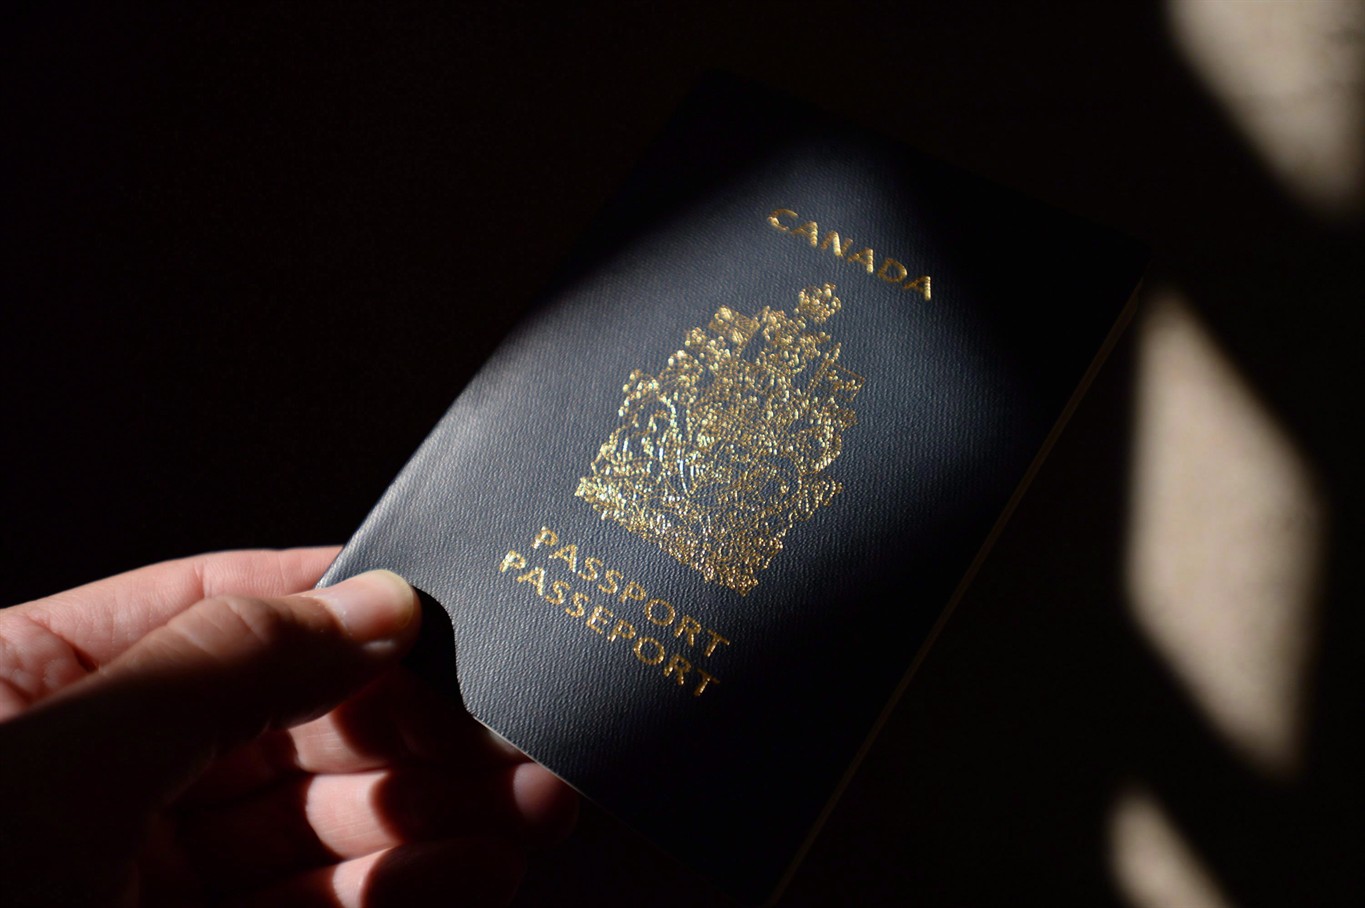 паспорт канады